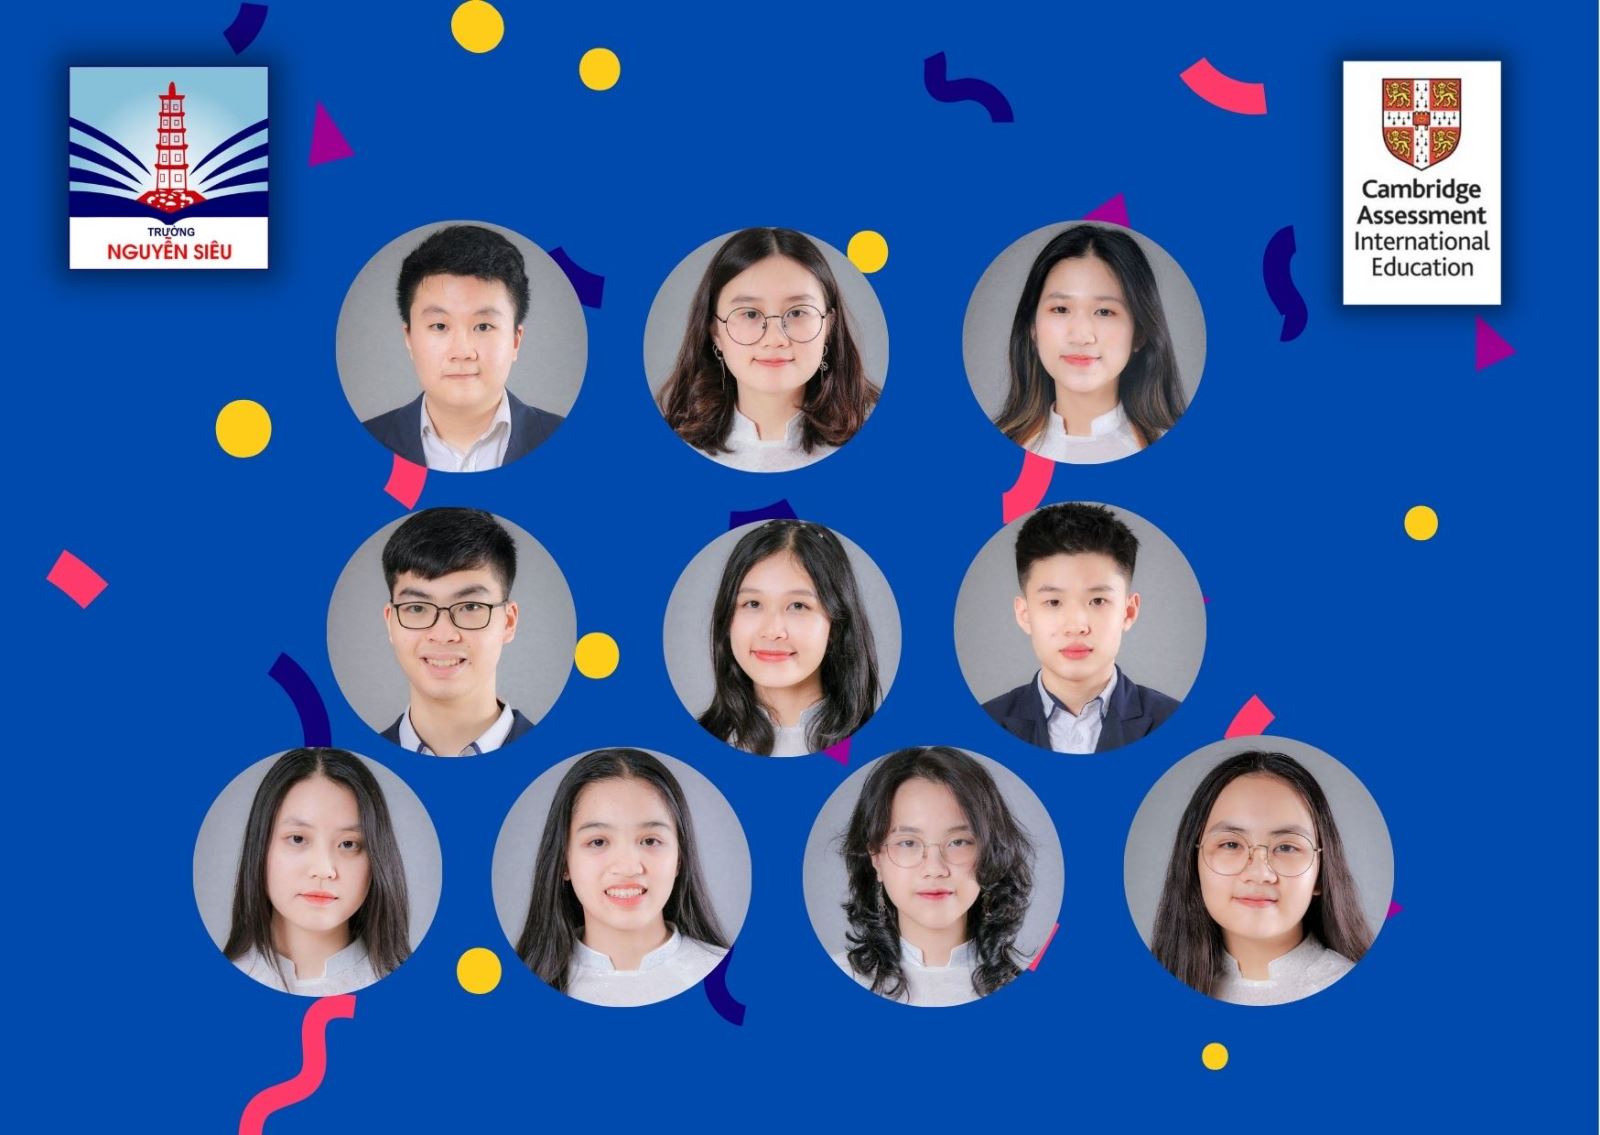 Kỷ lục Top in Vietnam 2021 của học sinh Cambridge Nguyễn Siêu